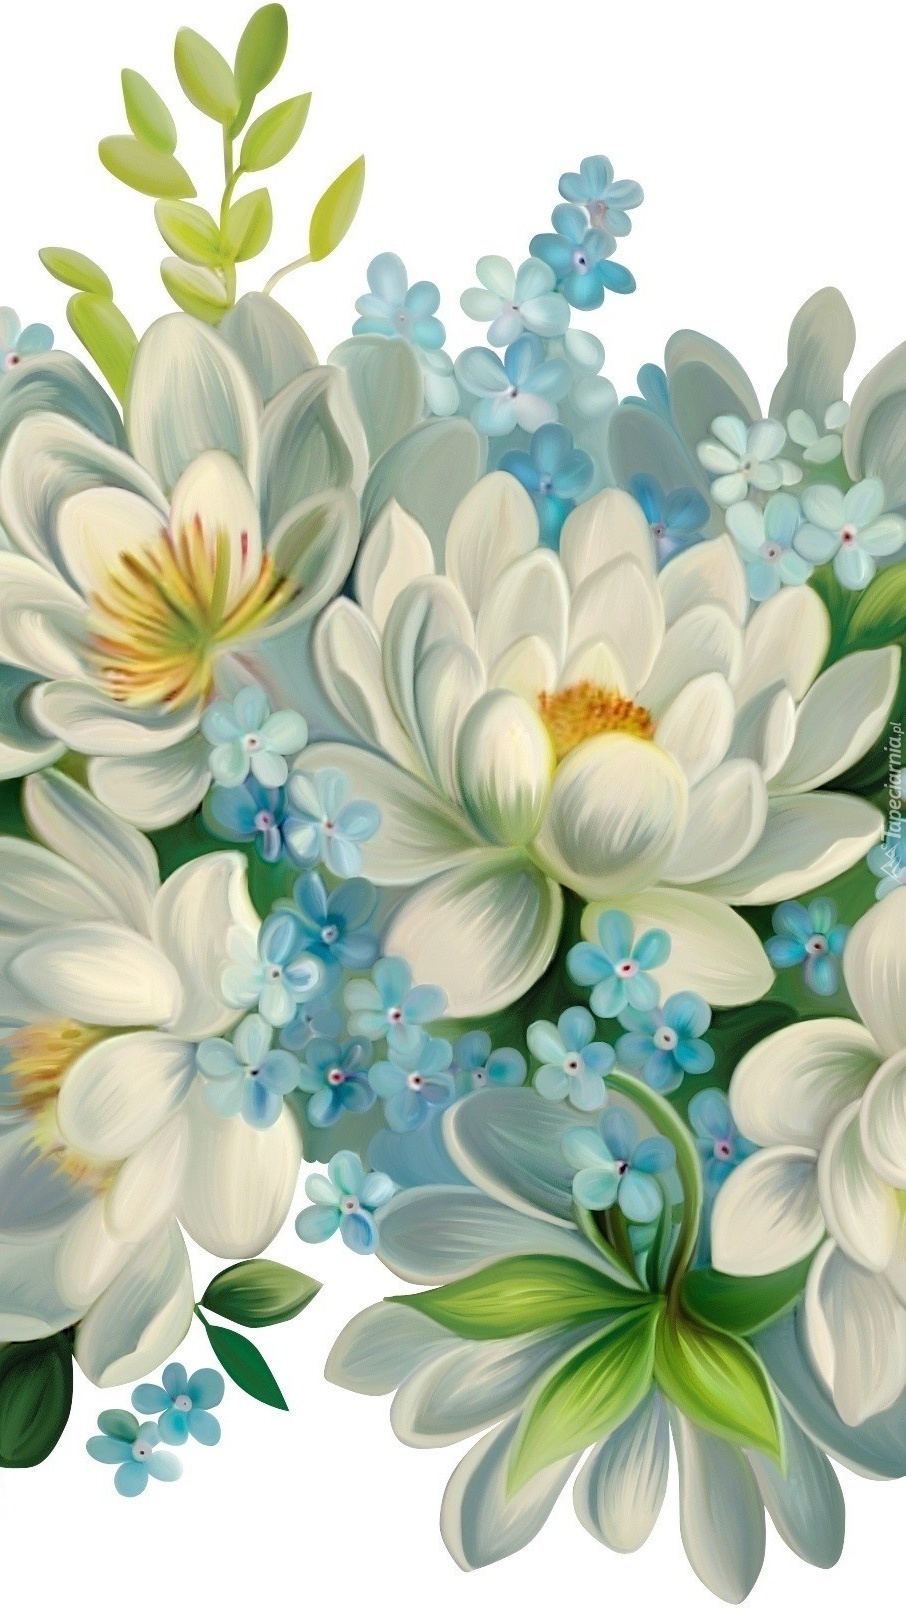 Kwiatowa biało-niebieska reprodukcja